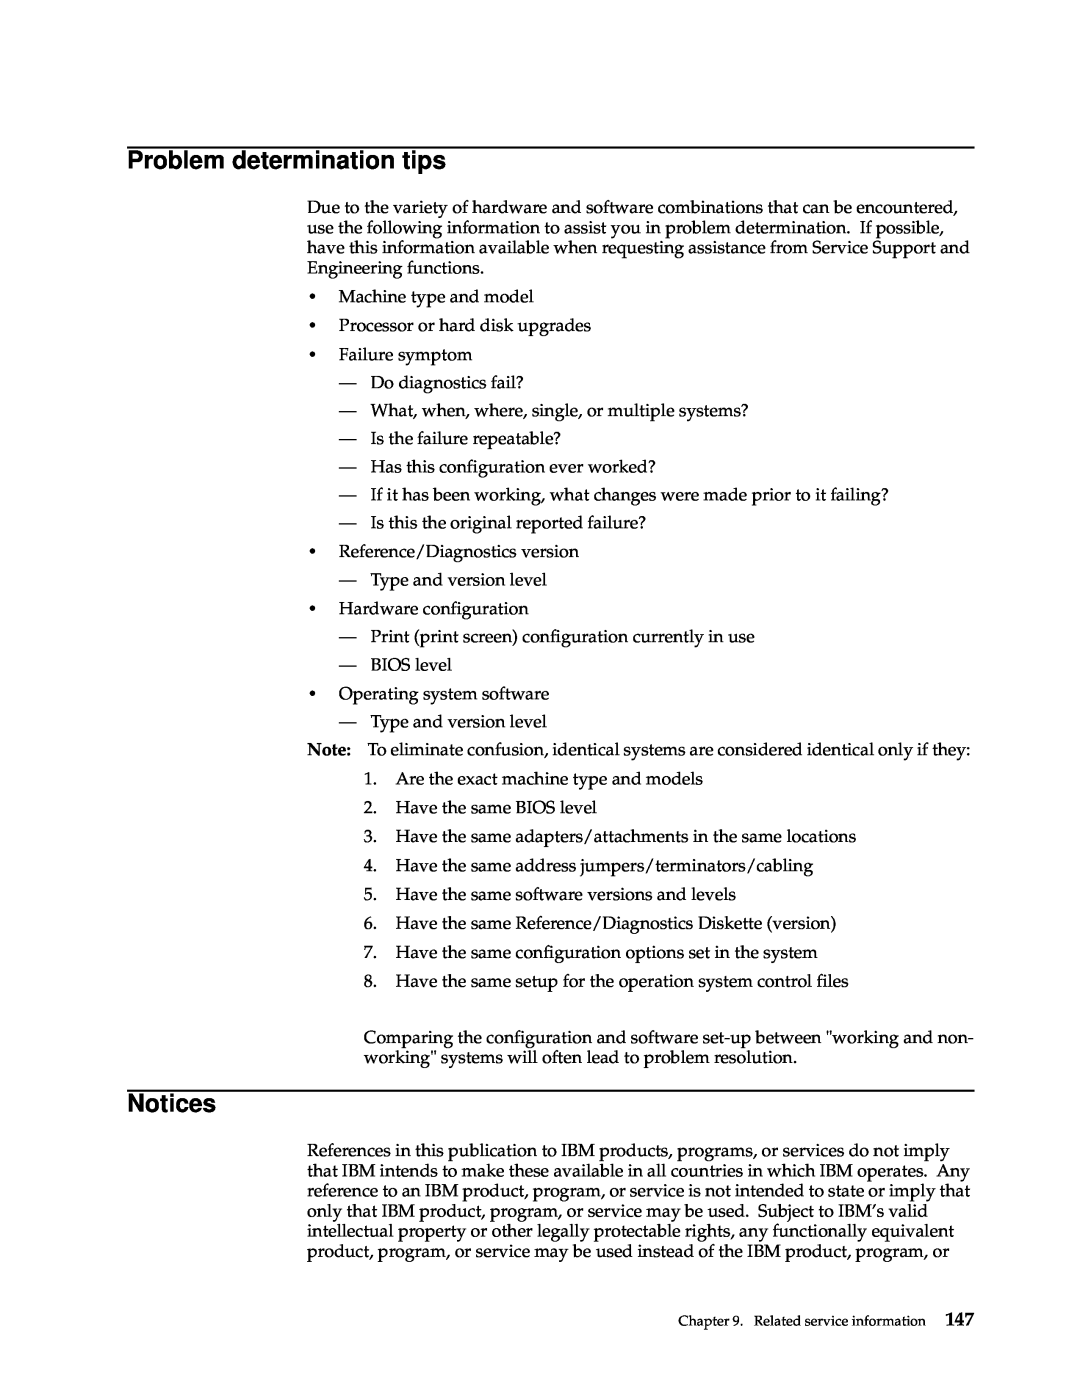 IBM xSeries 330 manual Problem determination tips, Notices 